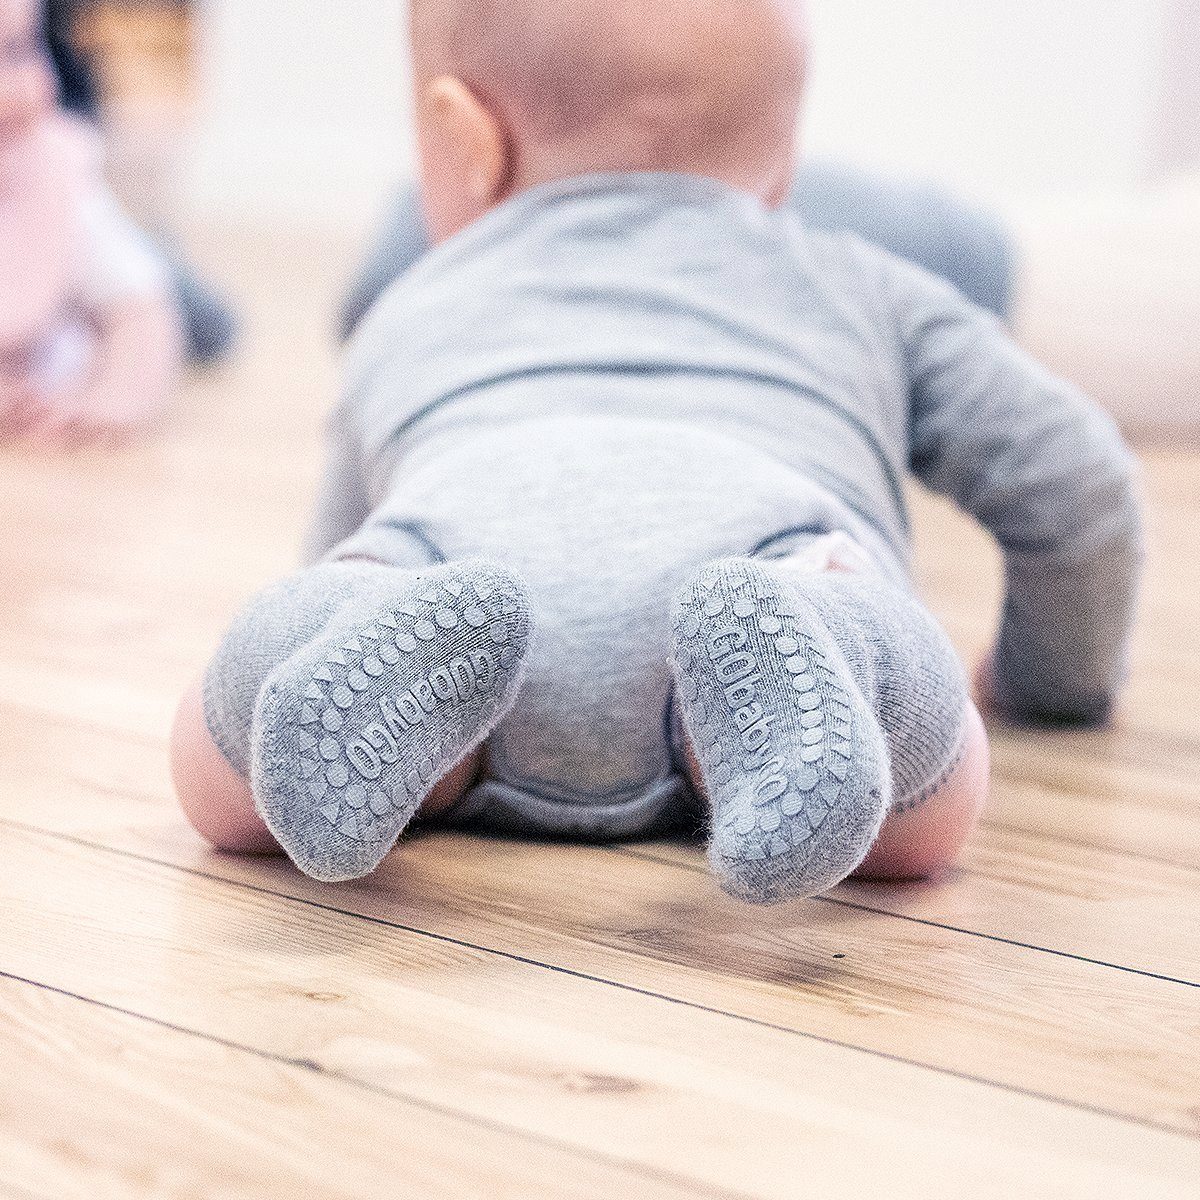 Strümpfe antirutsch Melange) Socken GoBabyGo (Grey Kinder mit Stoppersocken ABS-Socken Baby Krabbel - Rutschfeste Noppen Gummi - Kleinkinder